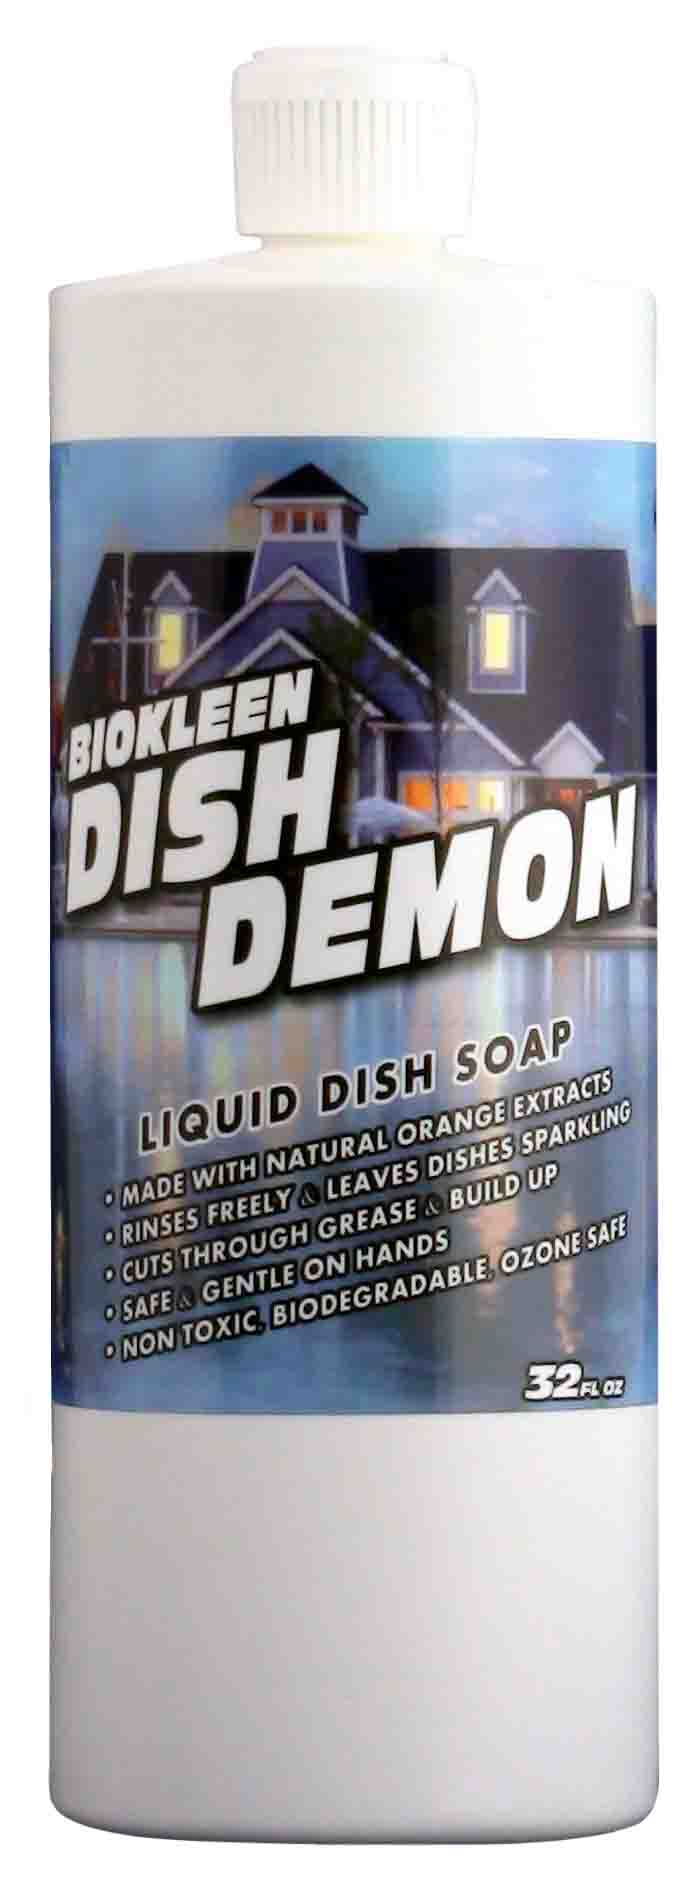 Dish Demon - Dish Washing Liquid dish soap, cuts grease, dishwashing, kitchen soap, all natural